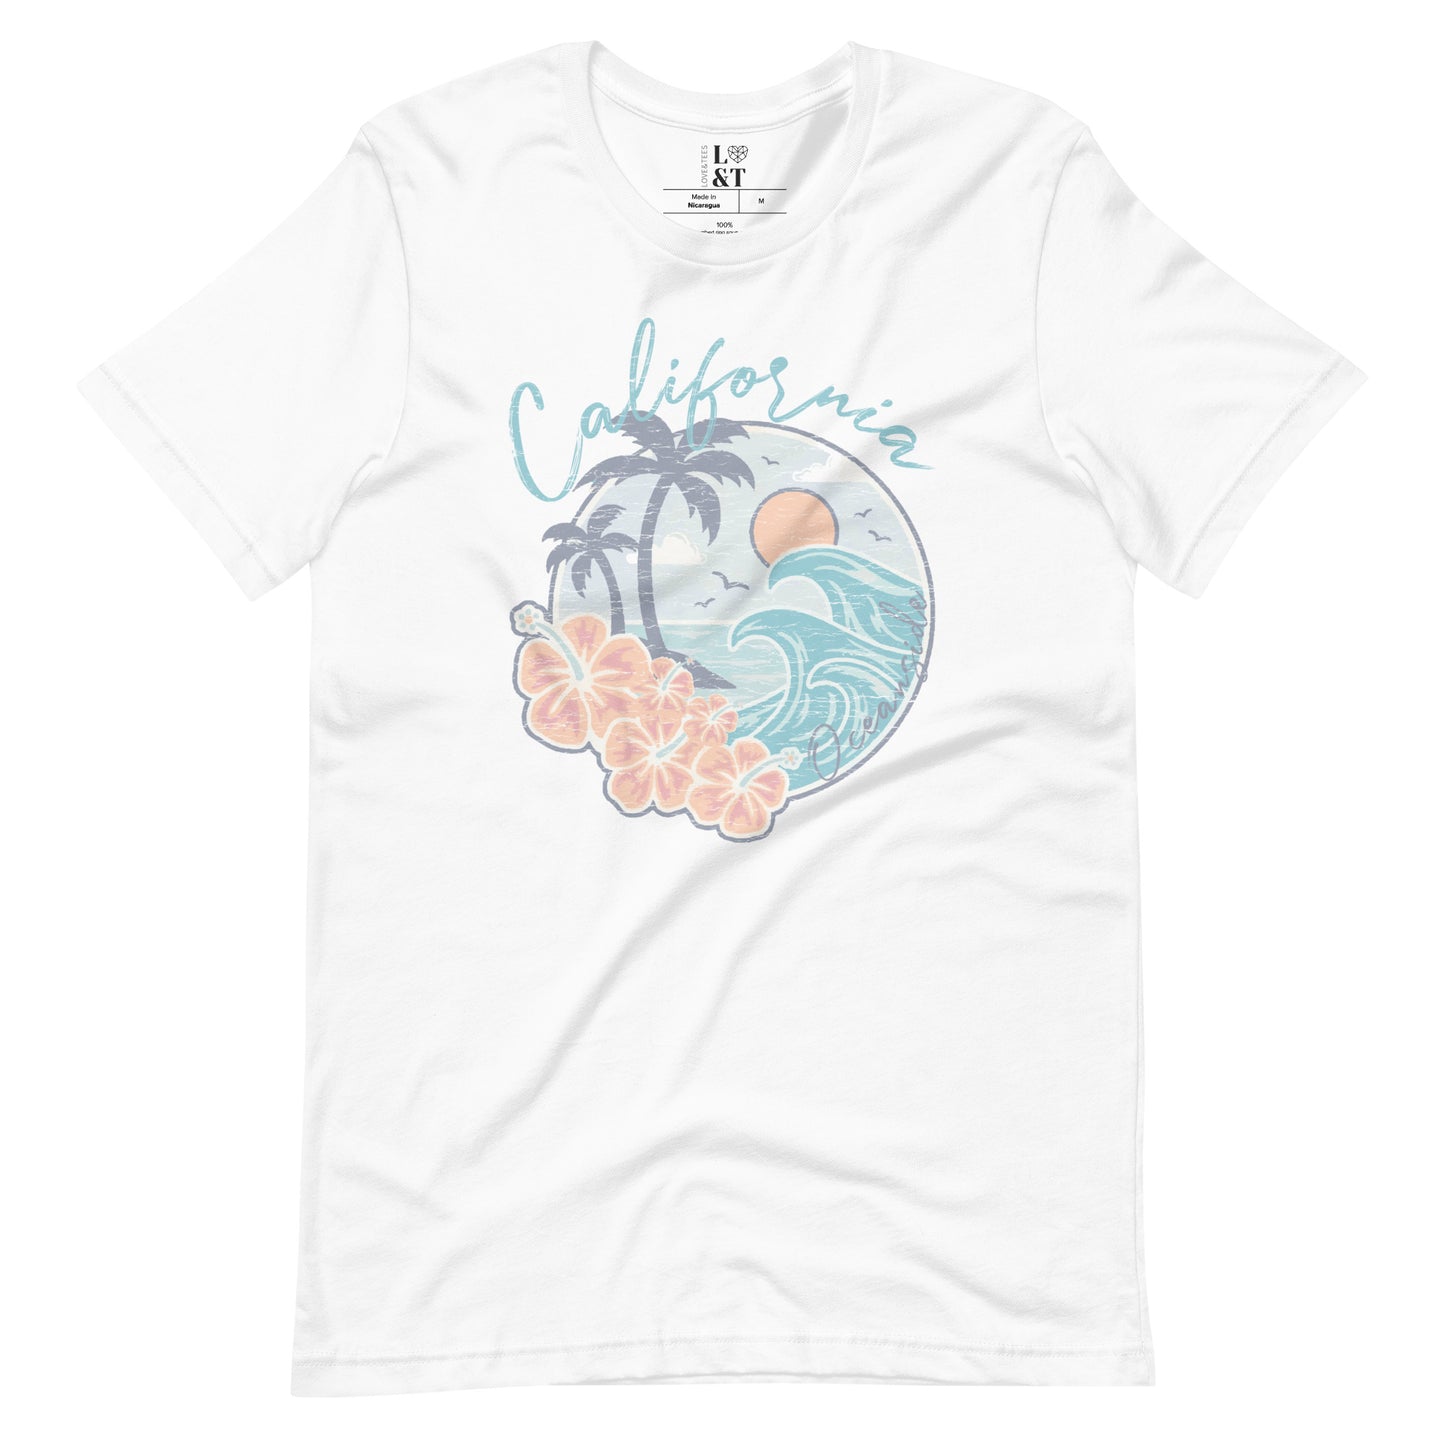 California Oceanside Unisex T-Shirt